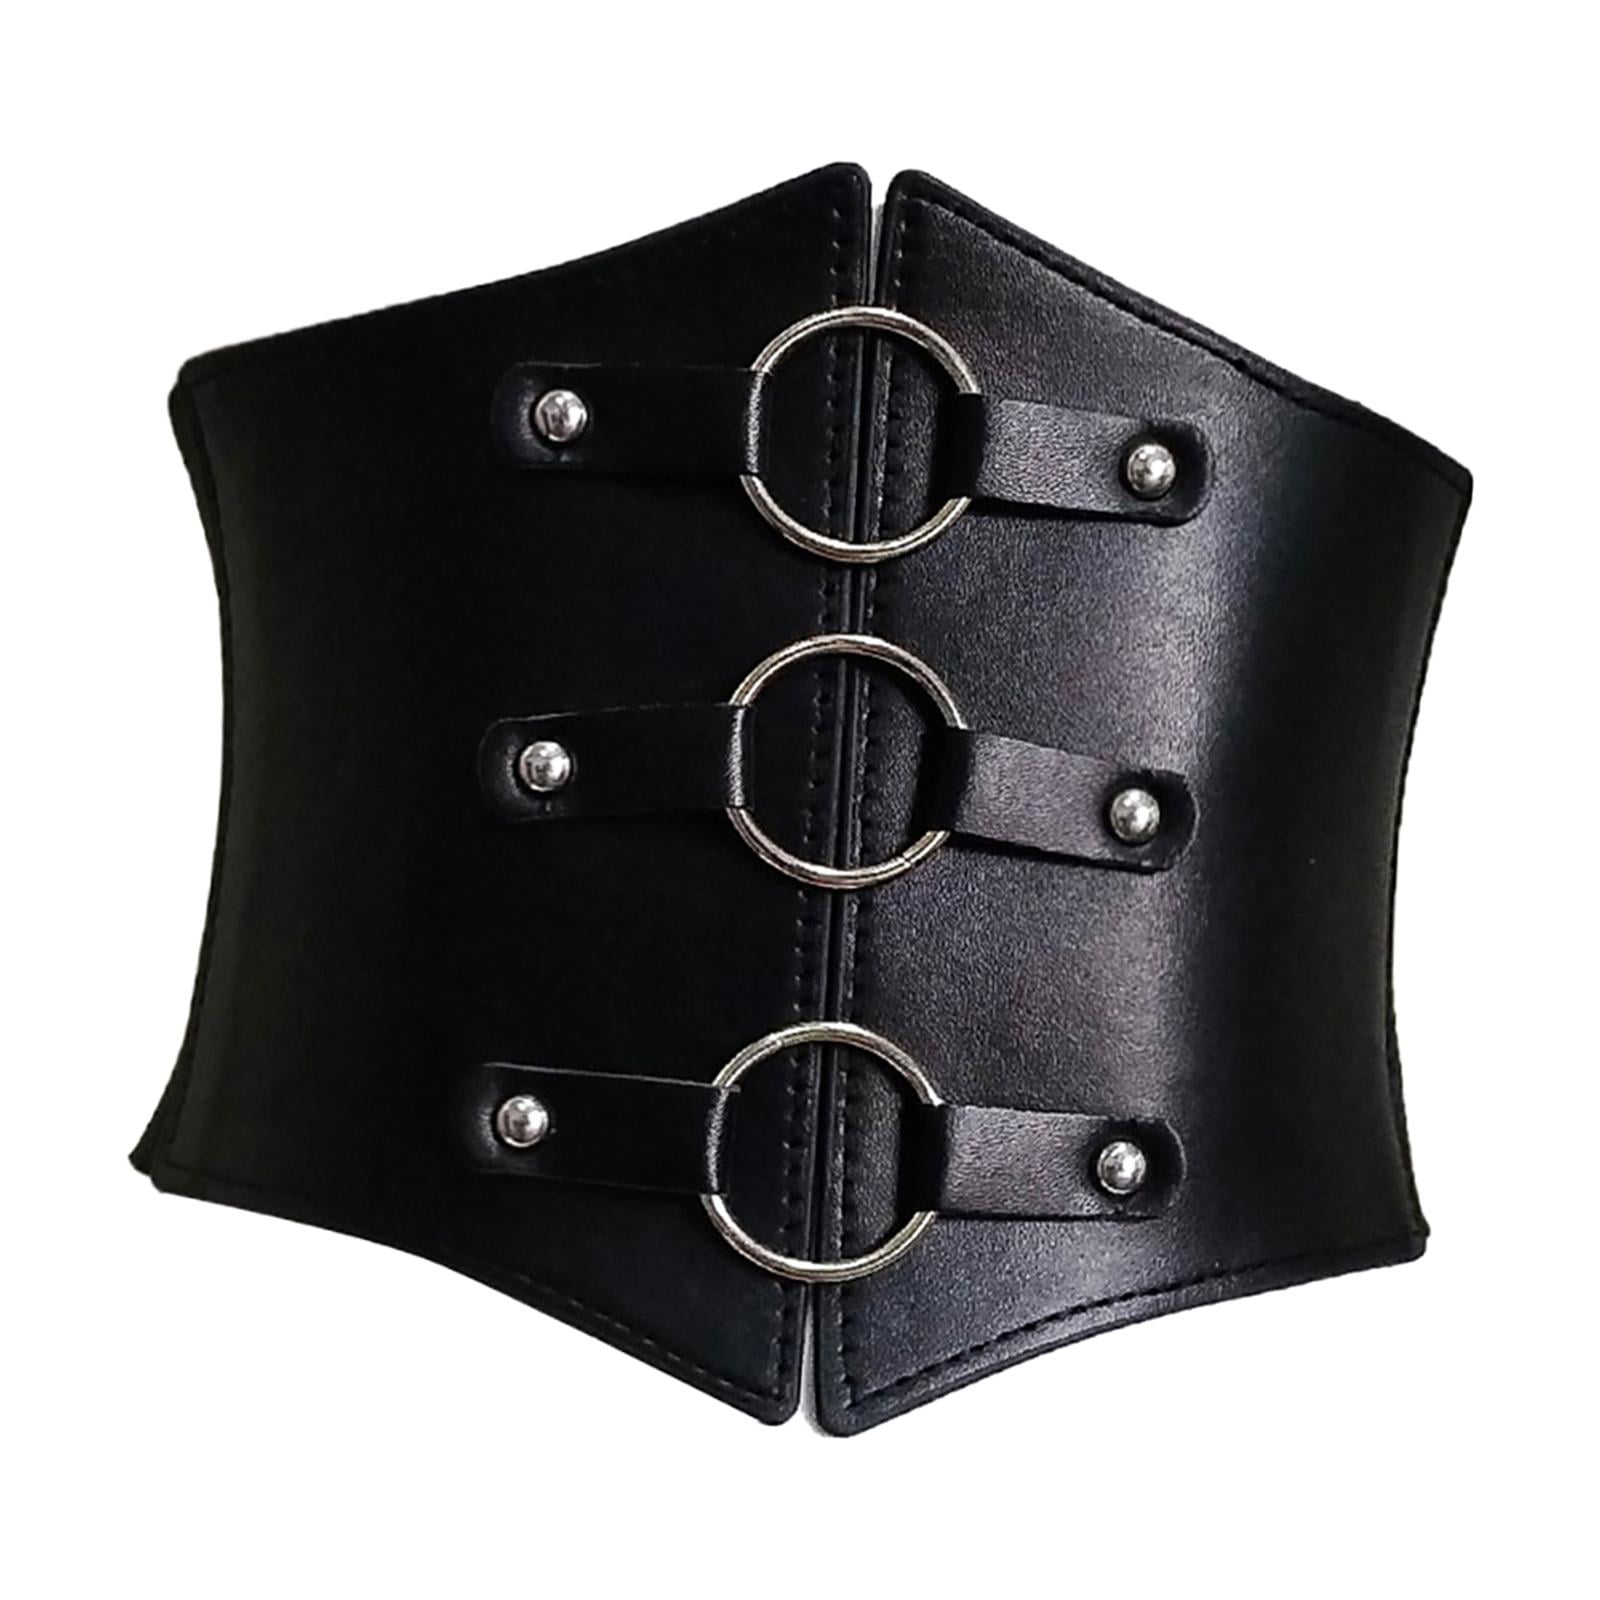 Black Retro Pu Leather Wide Elastic Corset Belt Ladies Dress Suit Stretch  Cummerbunds Plus Size Belts